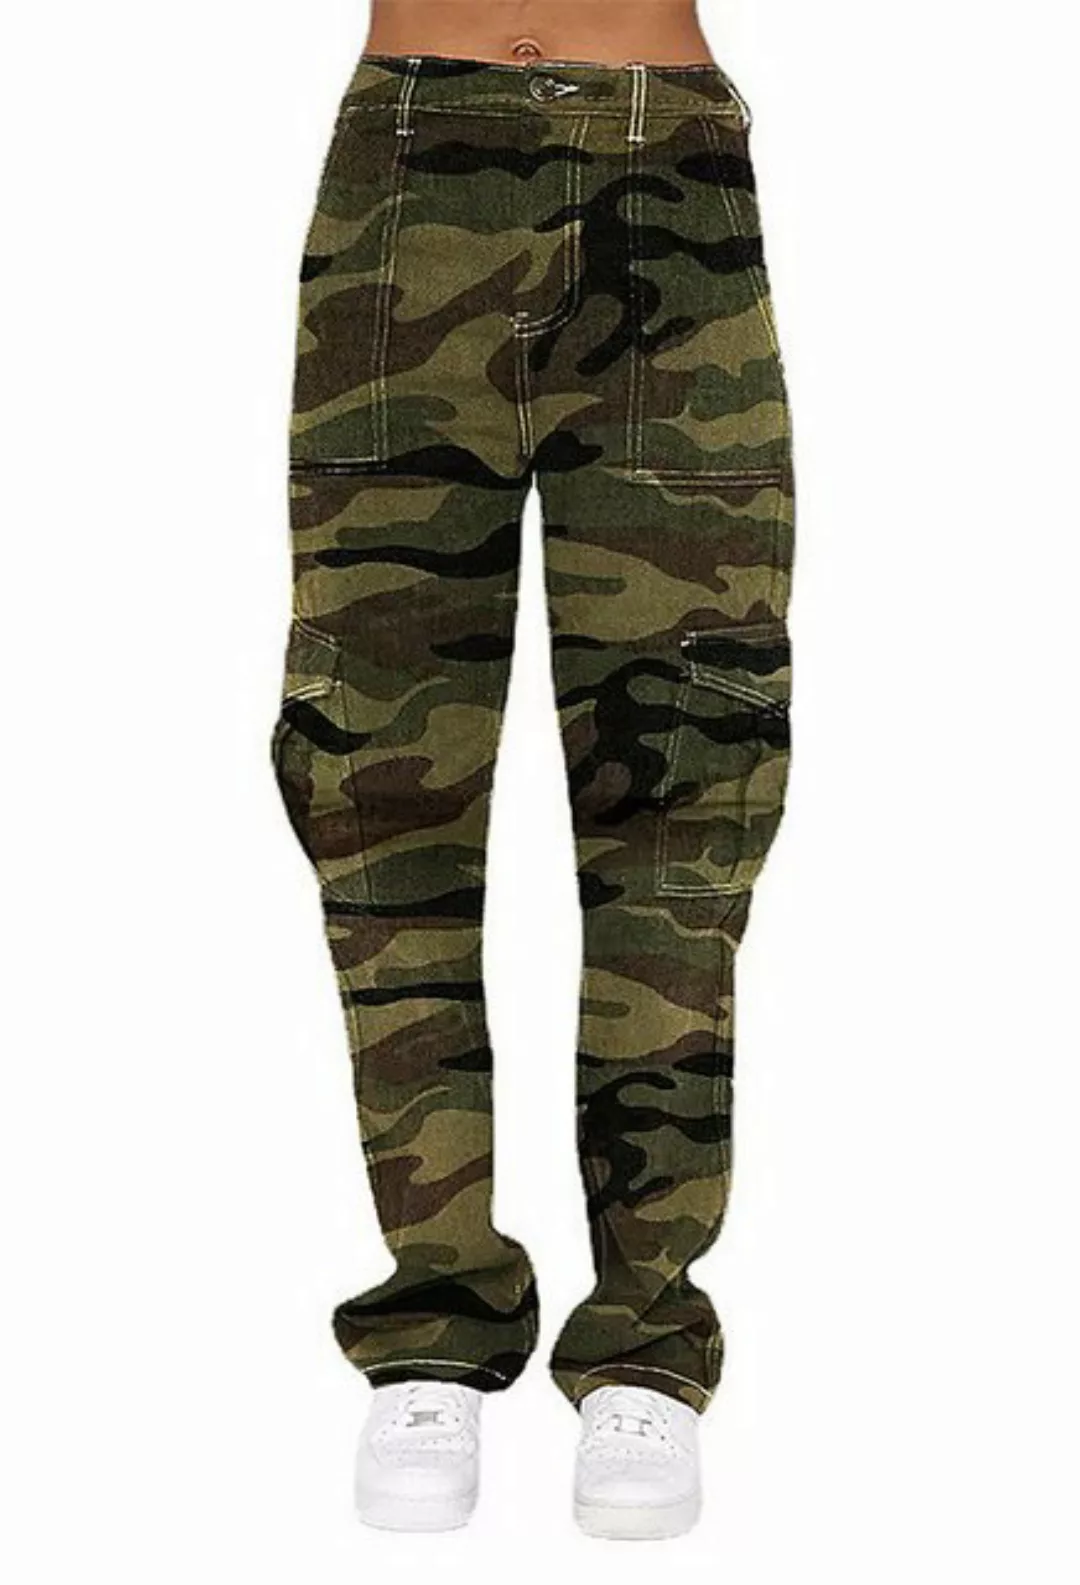 CHENIN Cargojeans Jeans damen lose personalisierte camouflage-taschen-overa günstig online kaufen